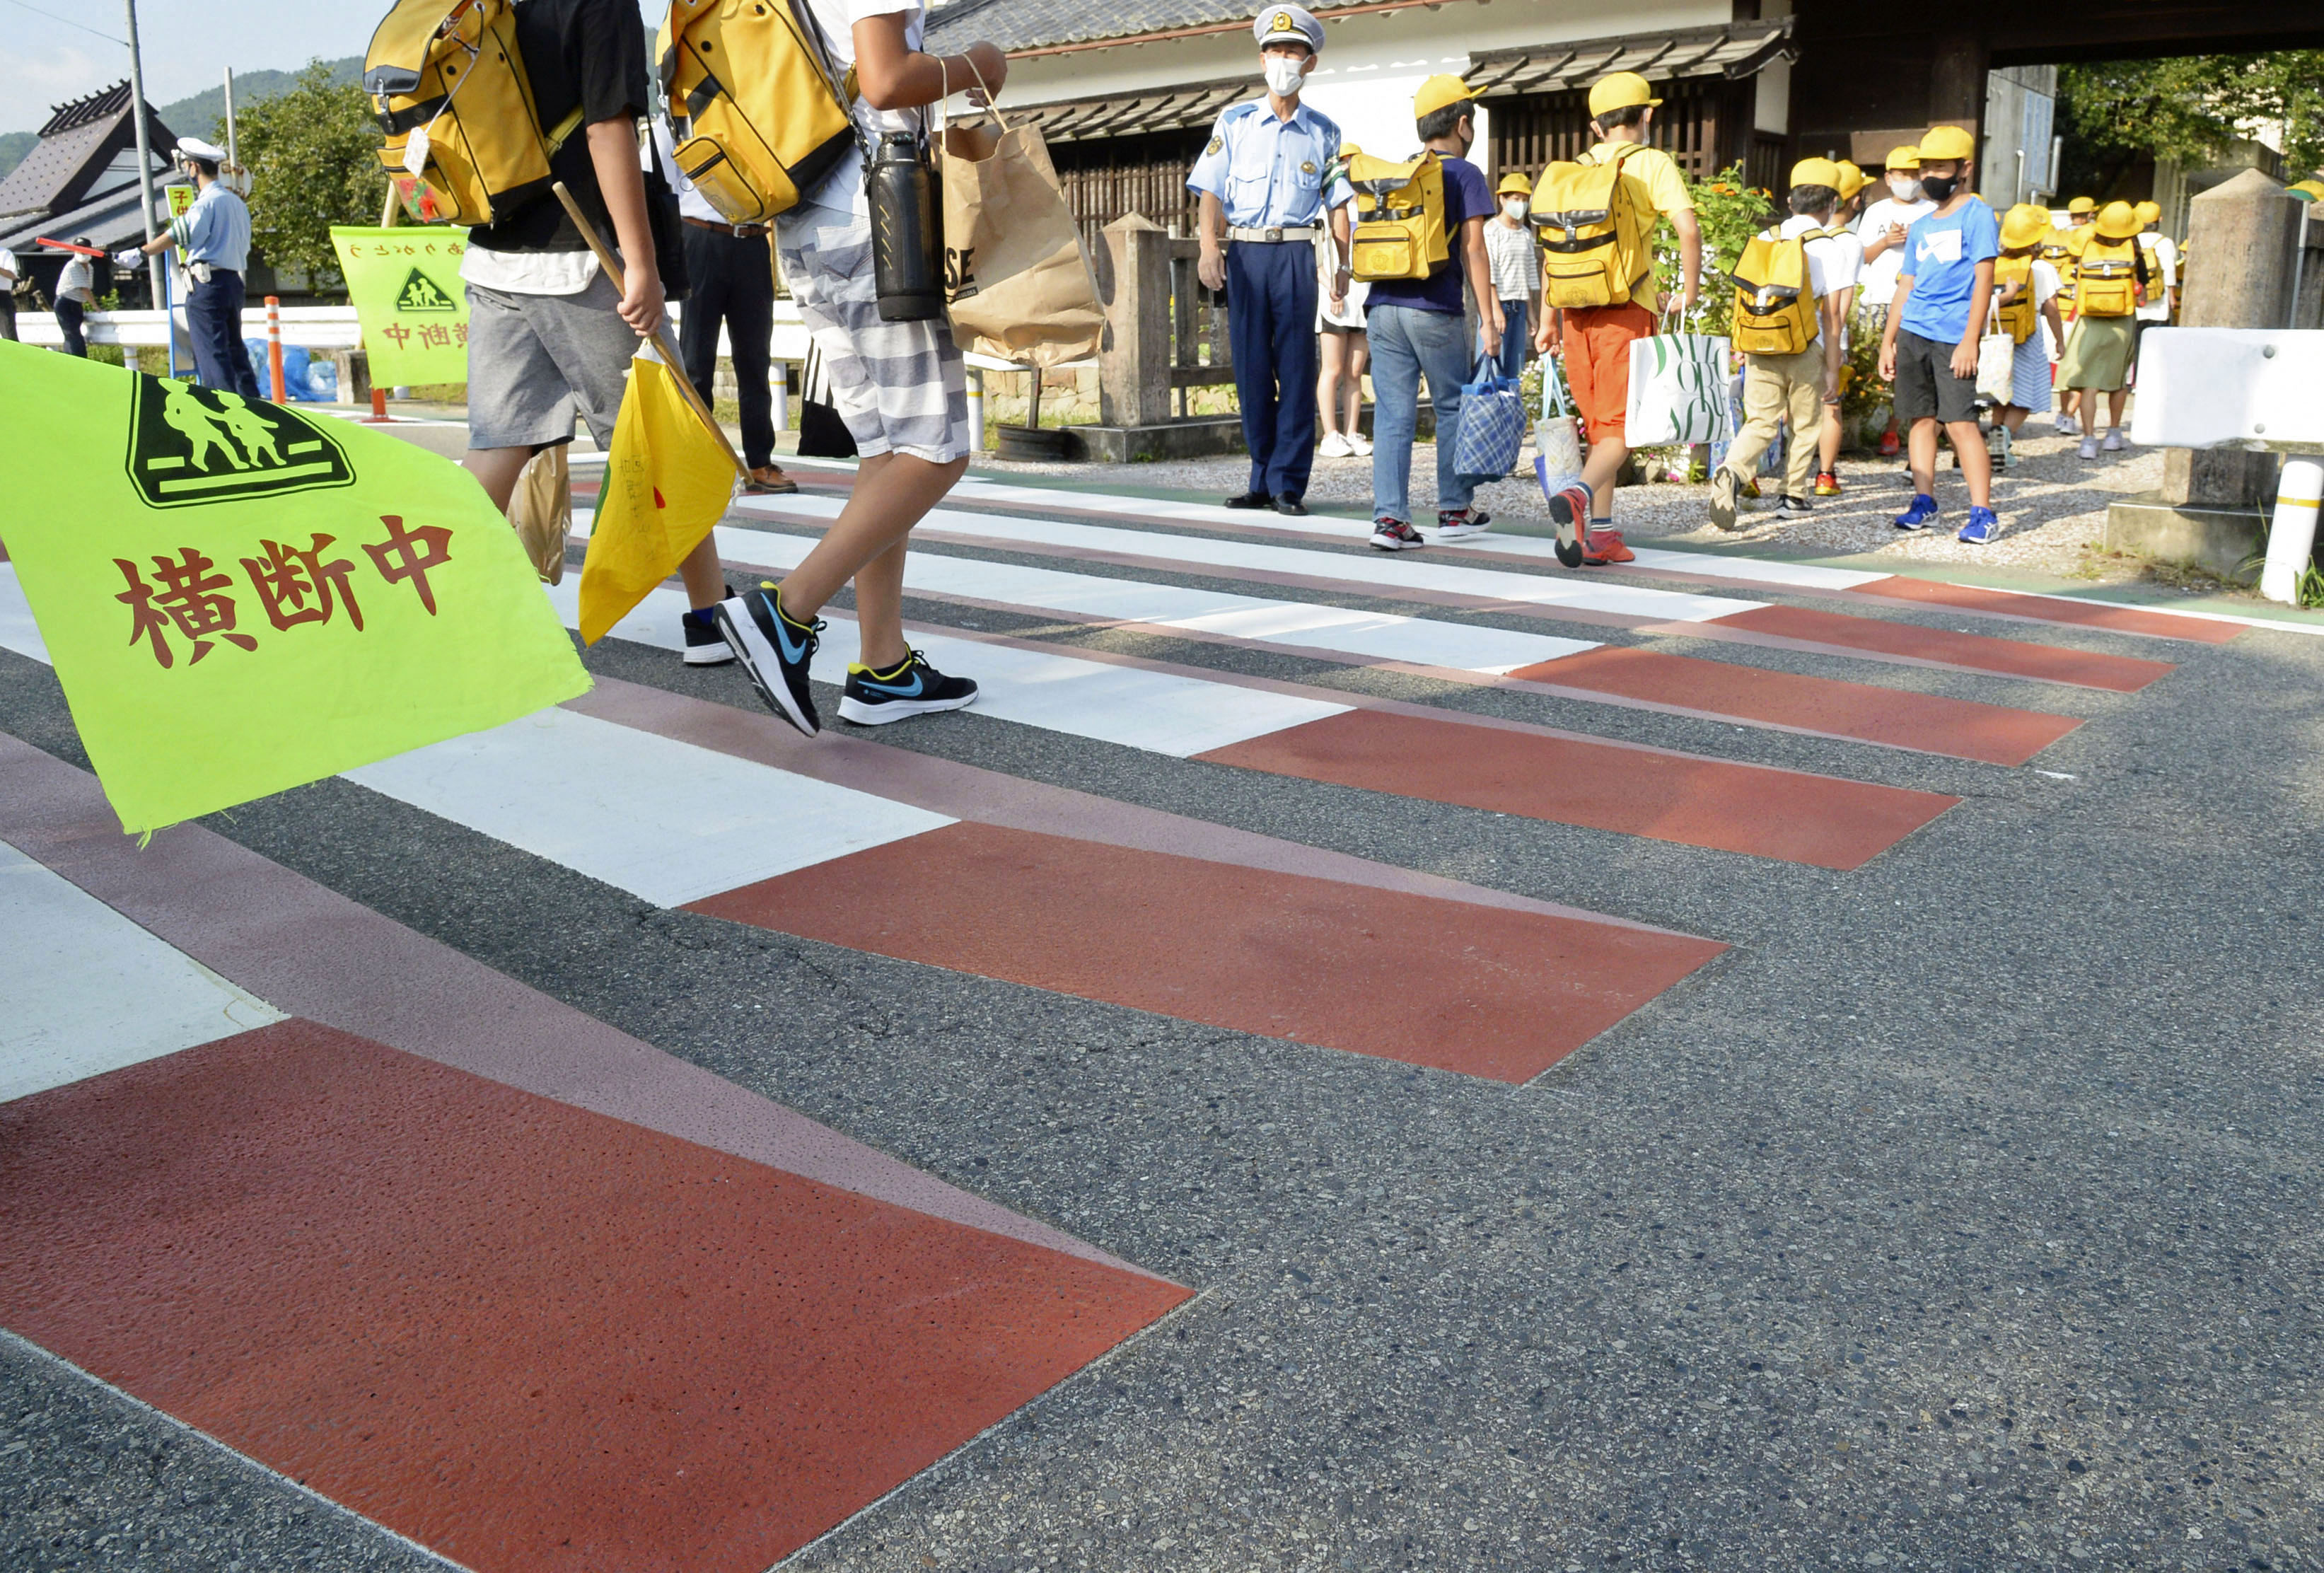 横断歩道が立体的に 京都 車に注意促す 産経ニュース